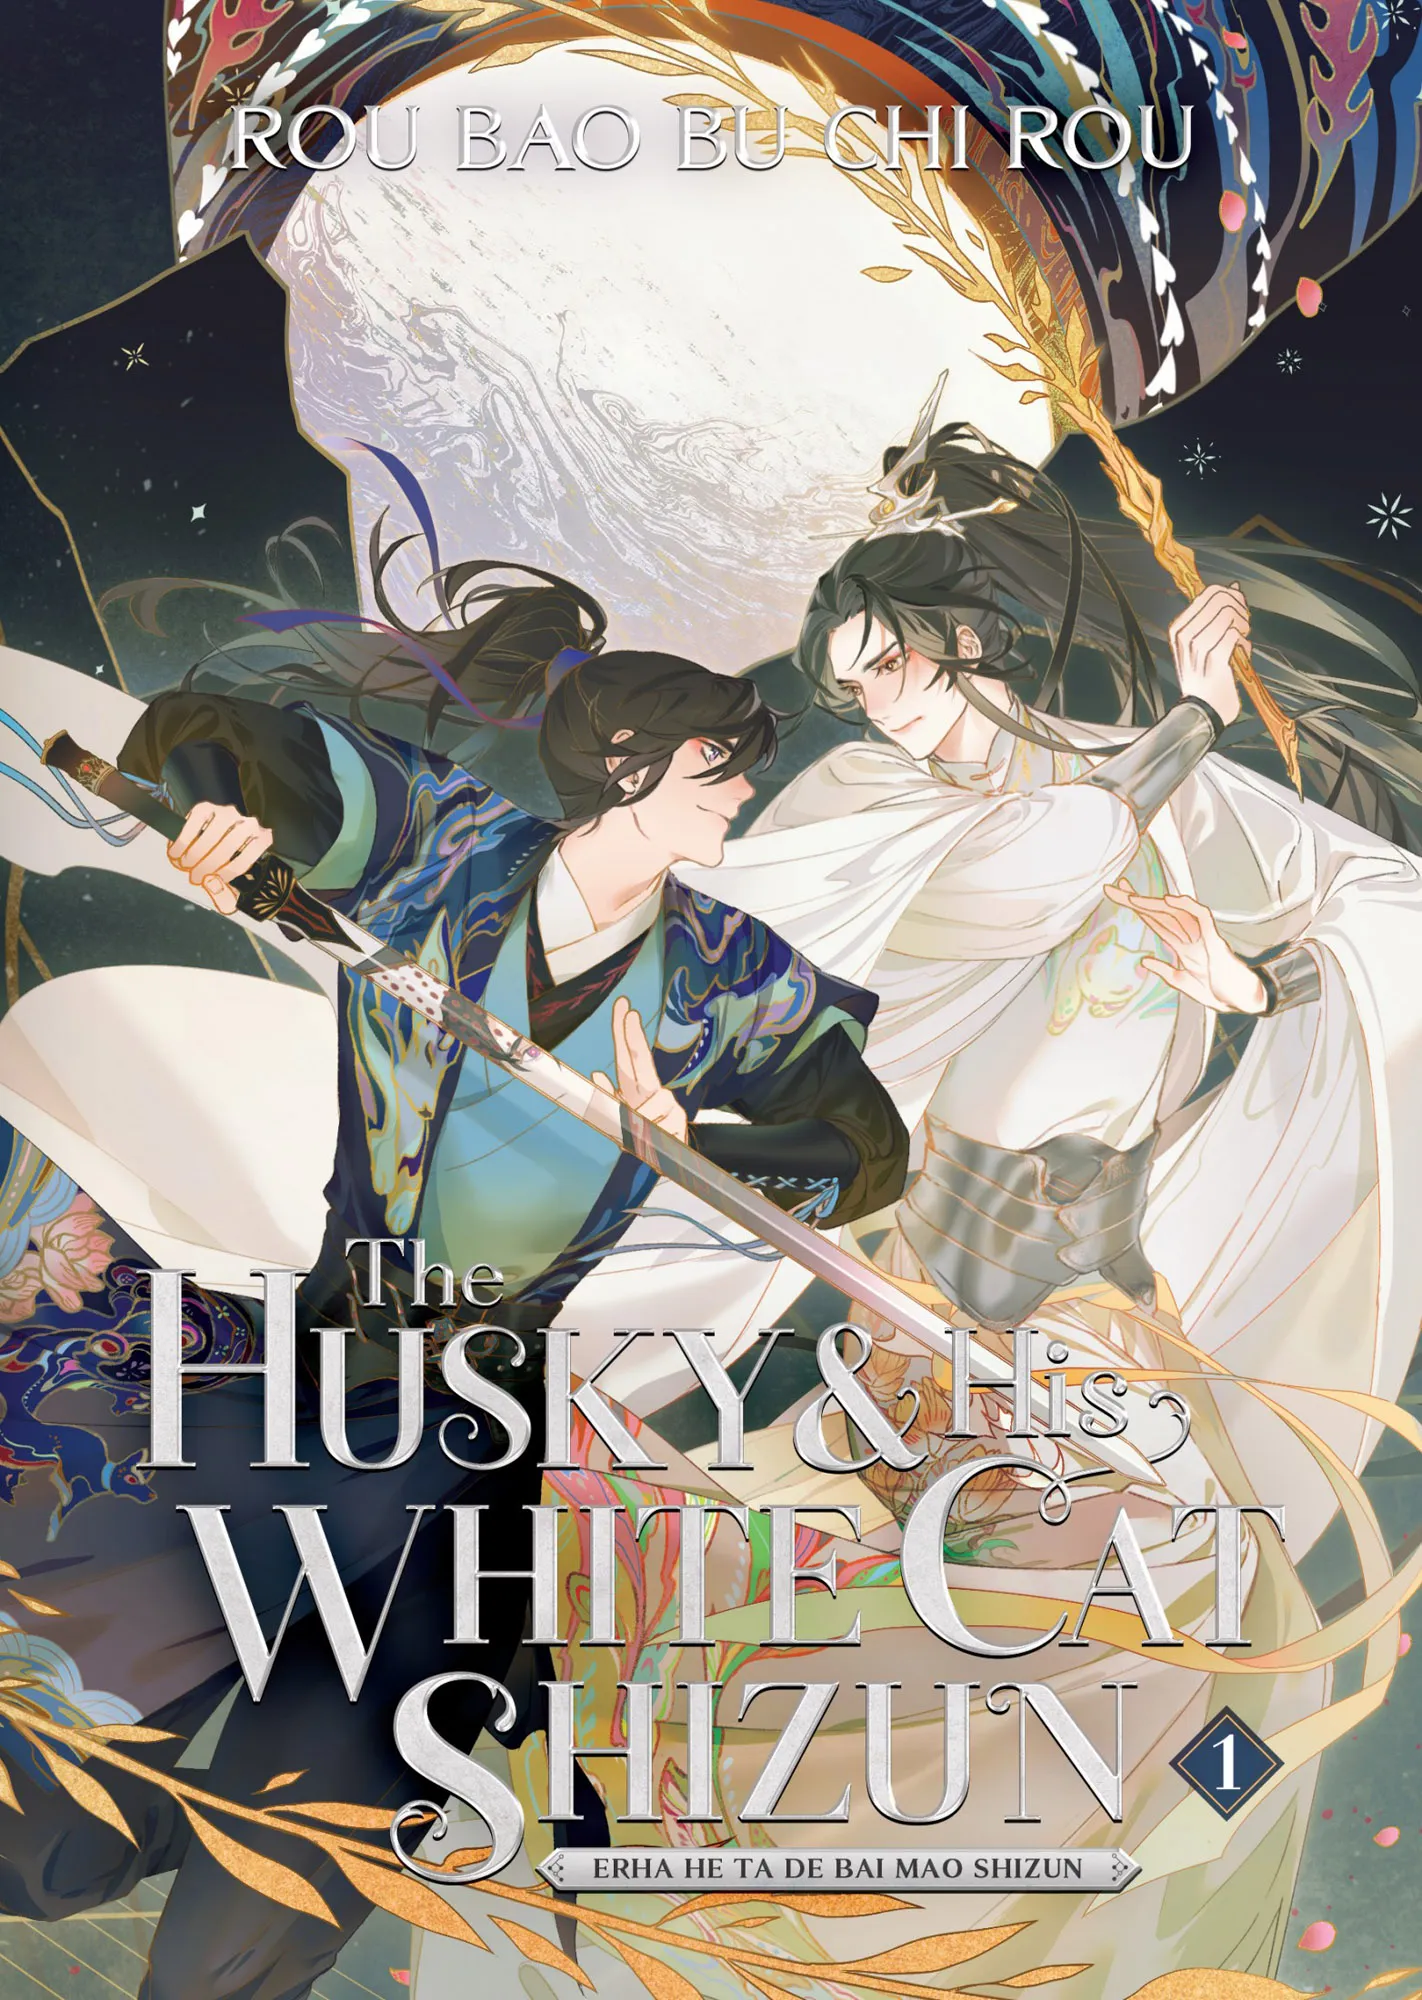 The Husky and His White Cat Shizun: Erha He Ta De Bai Mao Shizun Vol. 1 (The Husky and His White Cat Shizun: Erha He Ta De Bai Mao Shizun #1)